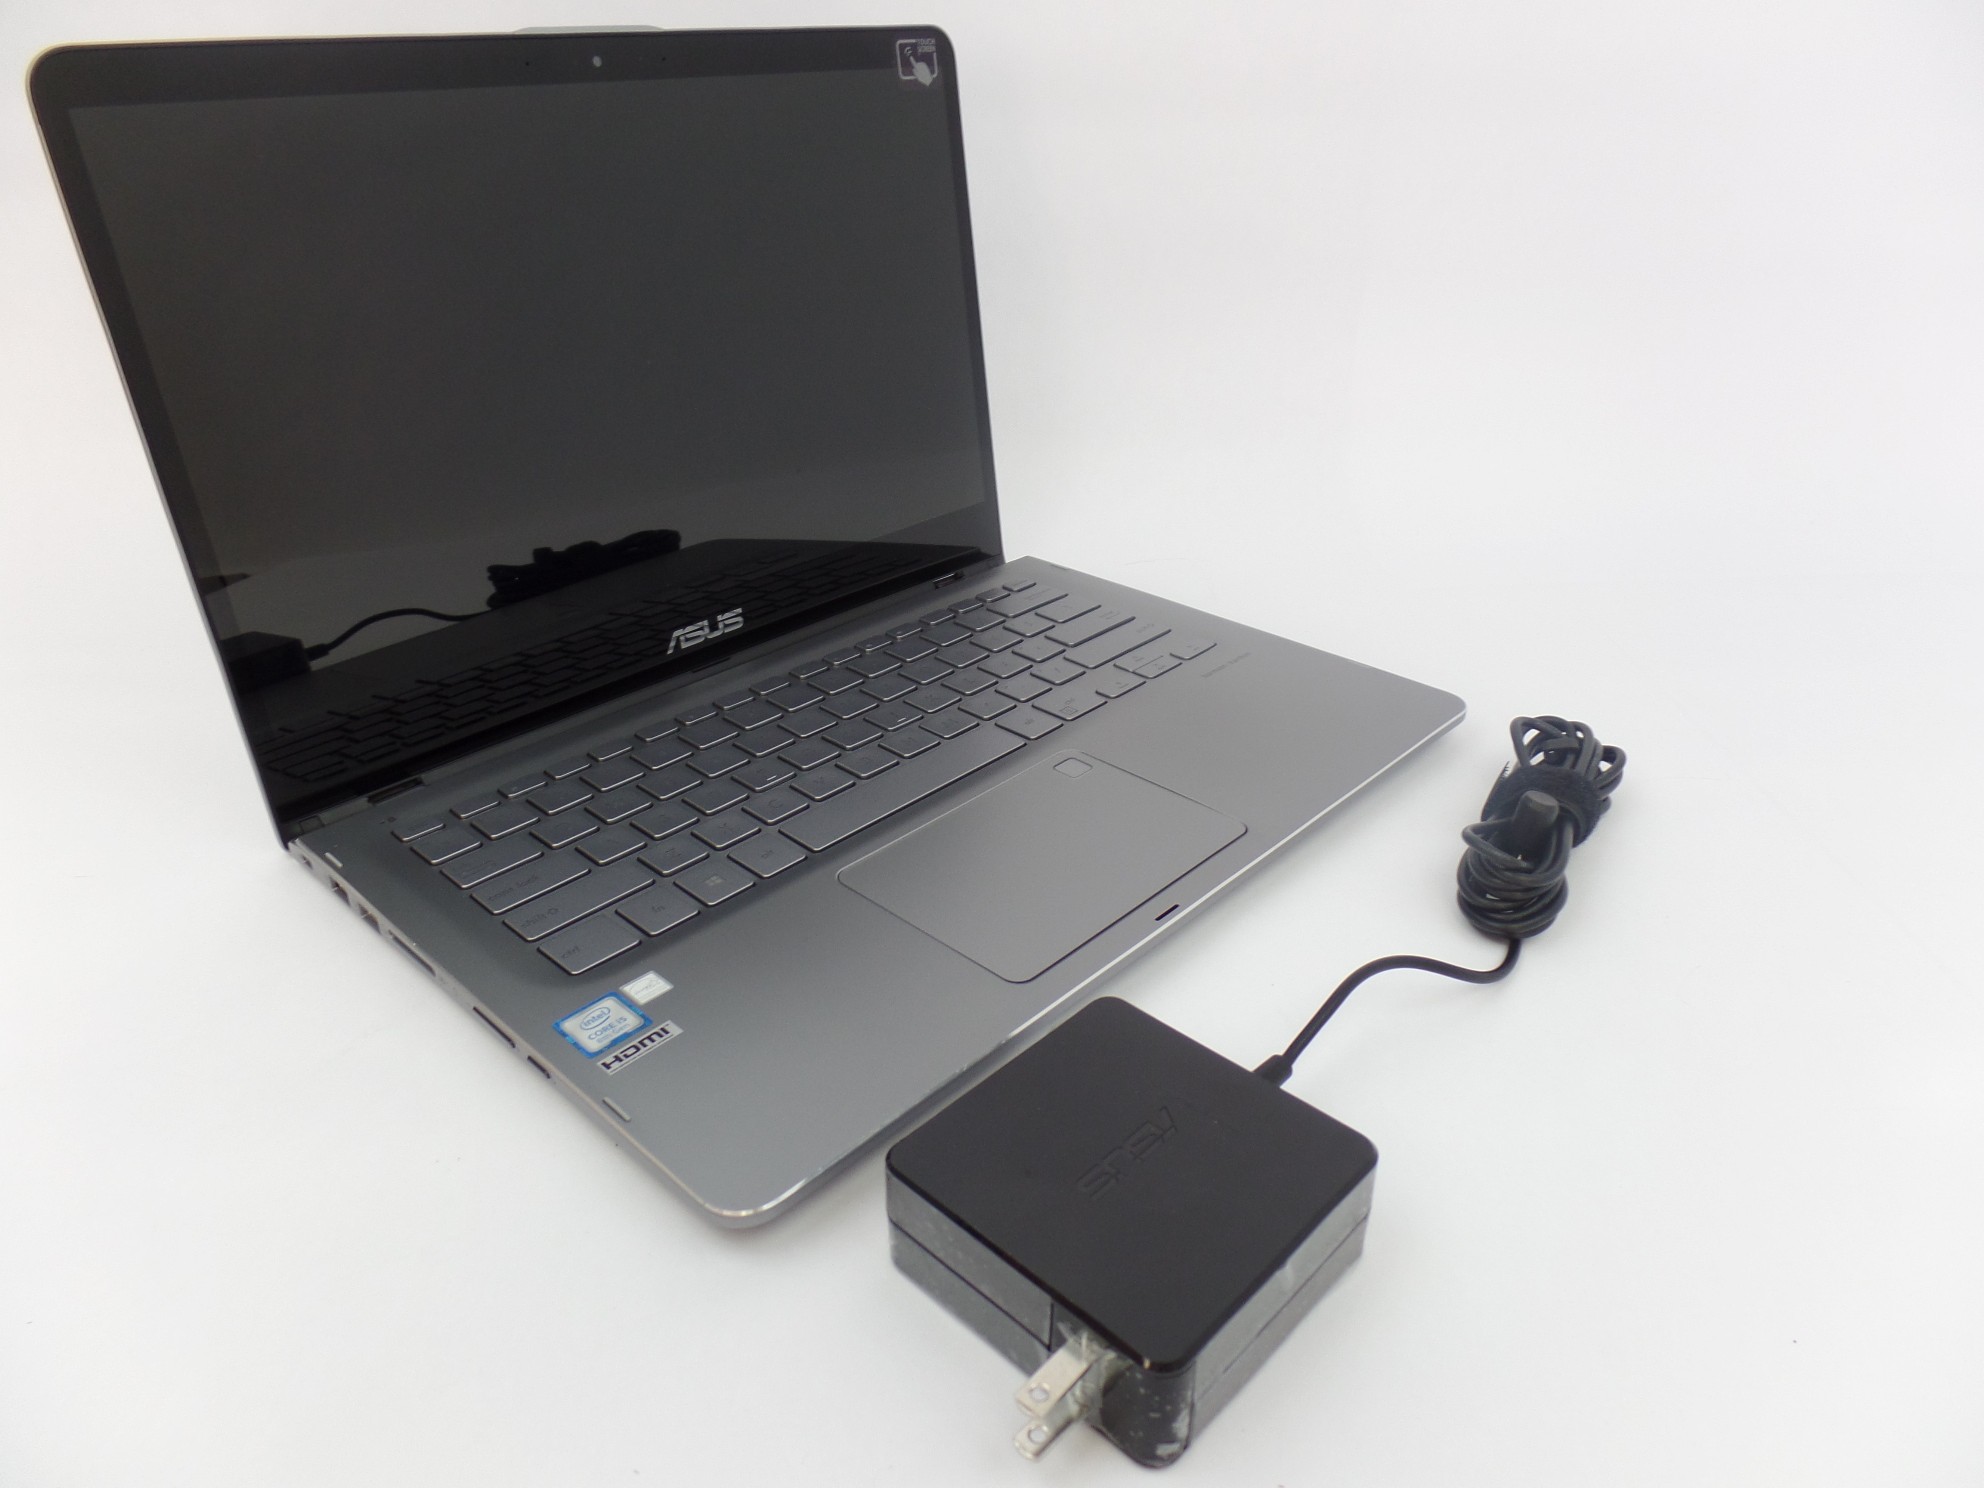 ASUS Q405UA-BI5T7 14" FHD Touch i5-8250U 1.6GHz 8GB 128GB SSD W10H Laptop U